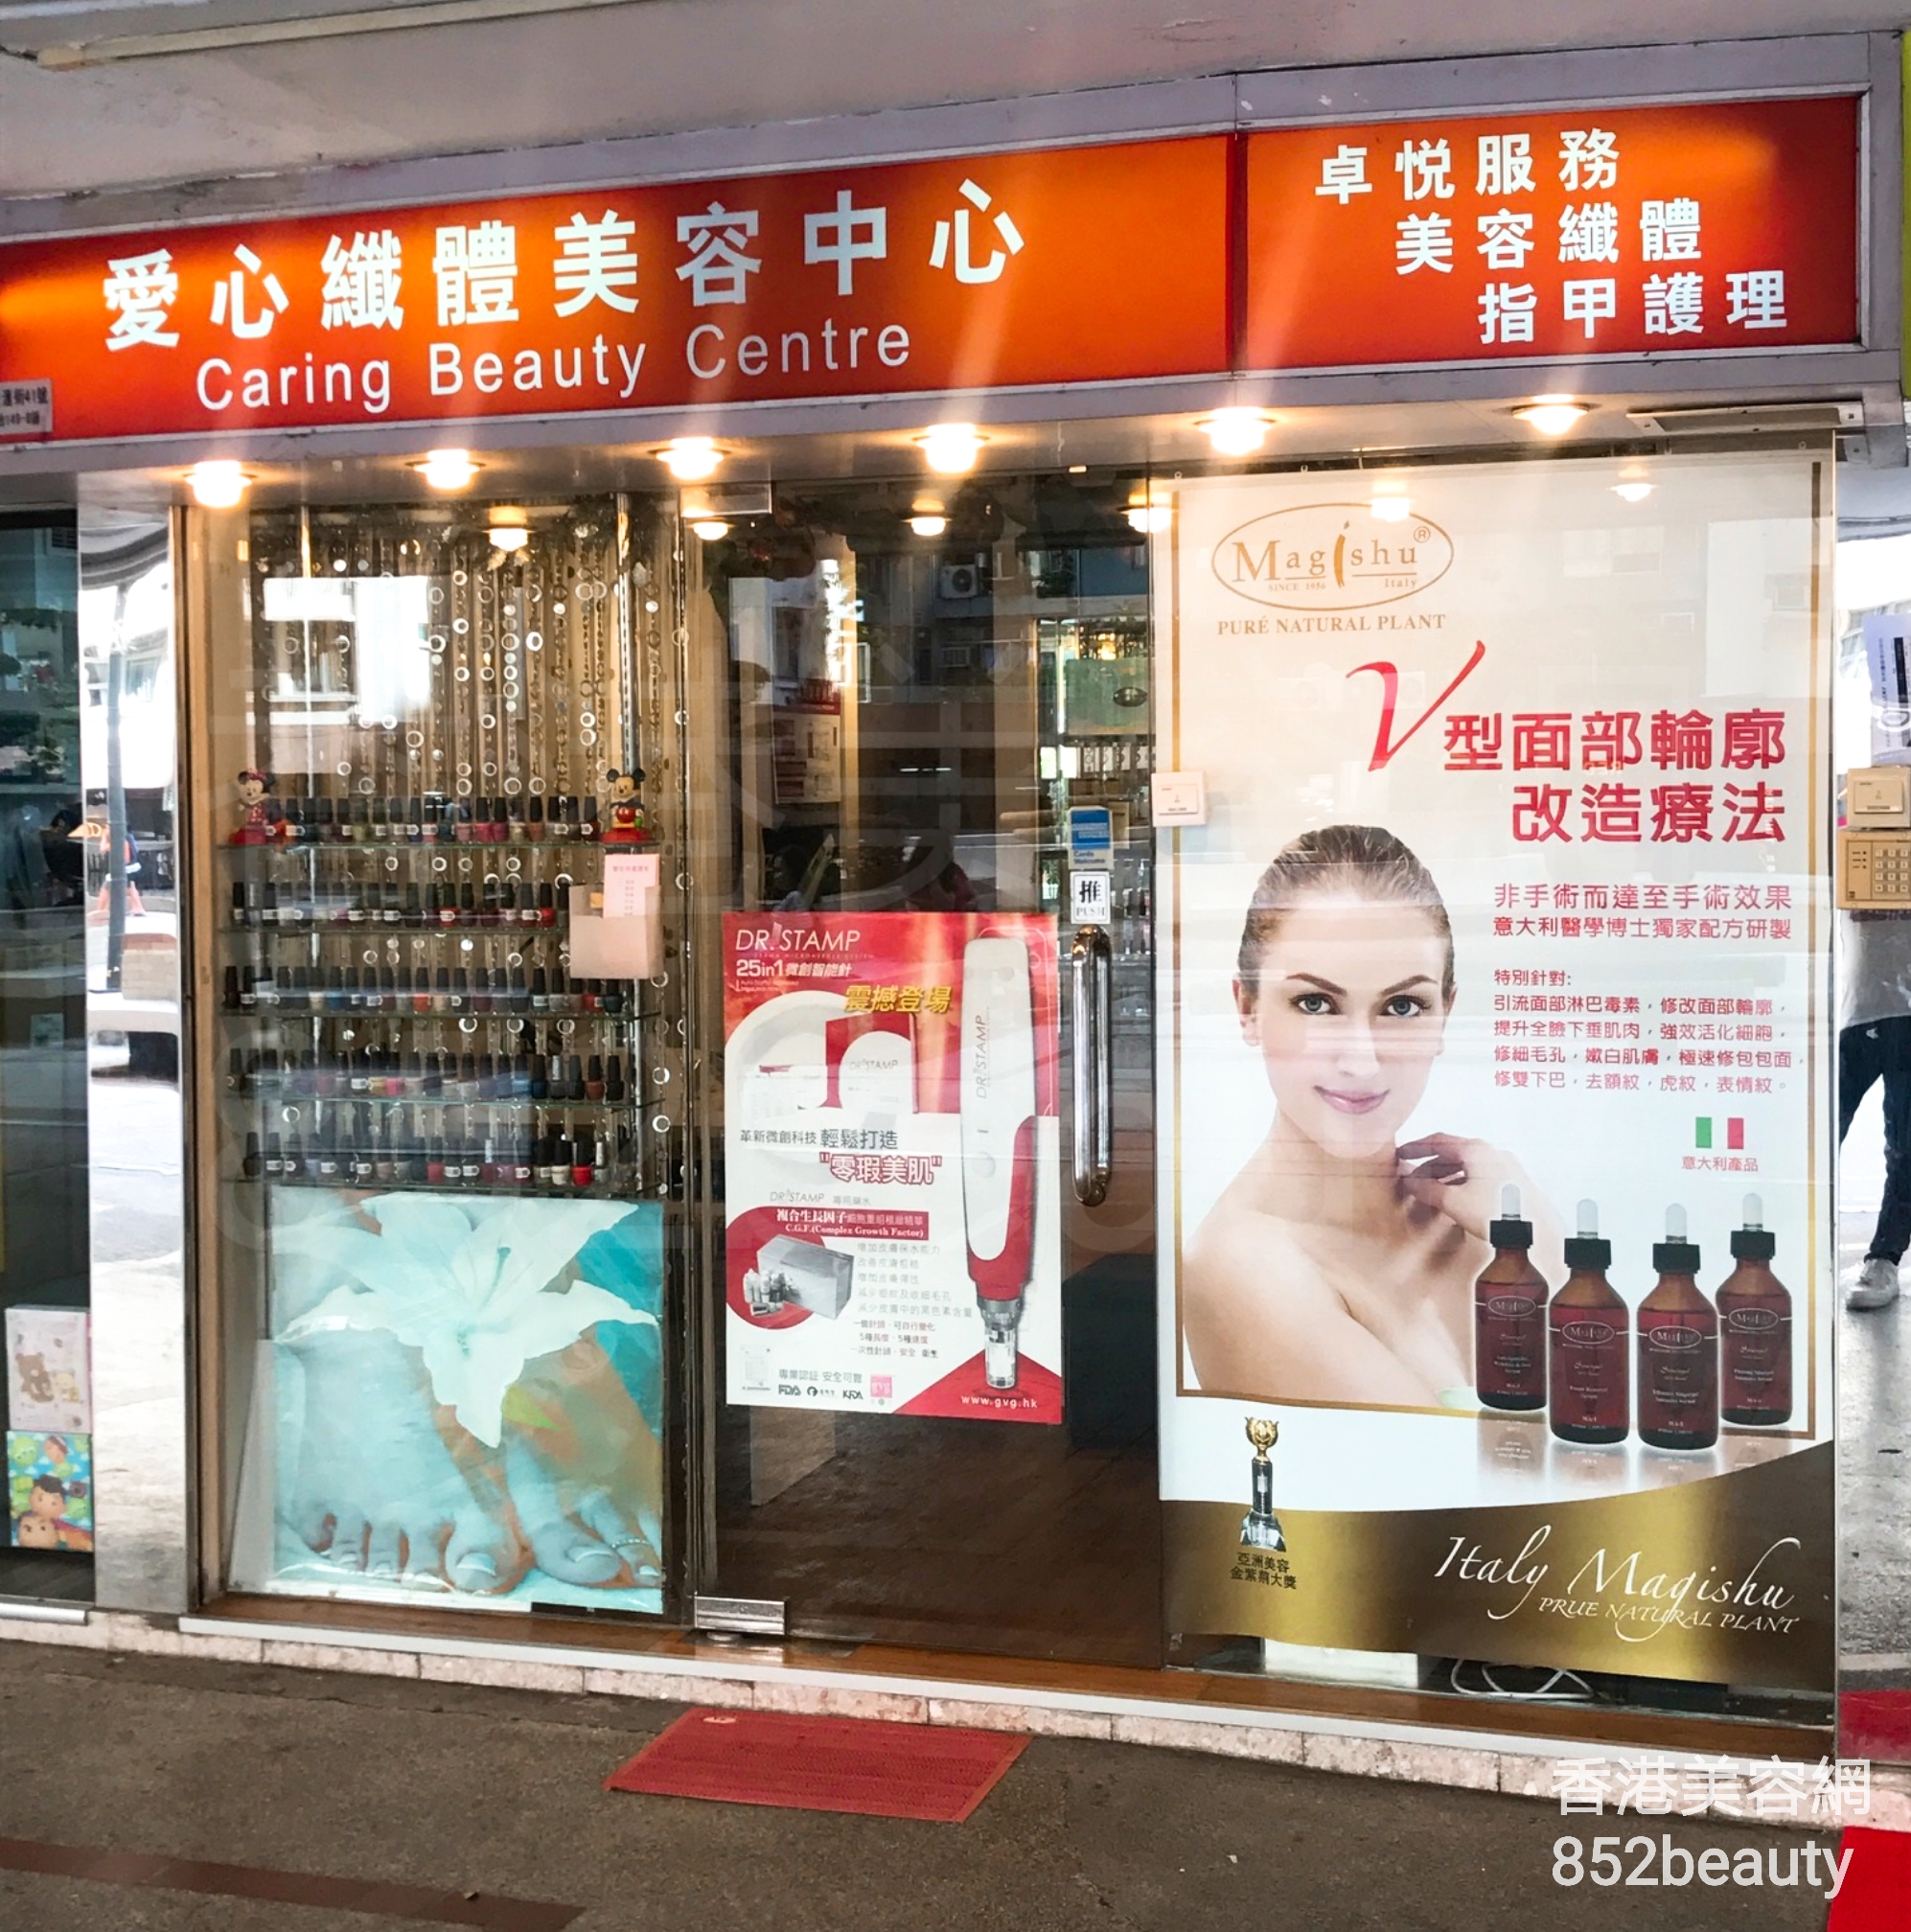 香港美容網 Hong Kong Beauty Salon 美容院 / 美容師: 愛心纖體美容中心